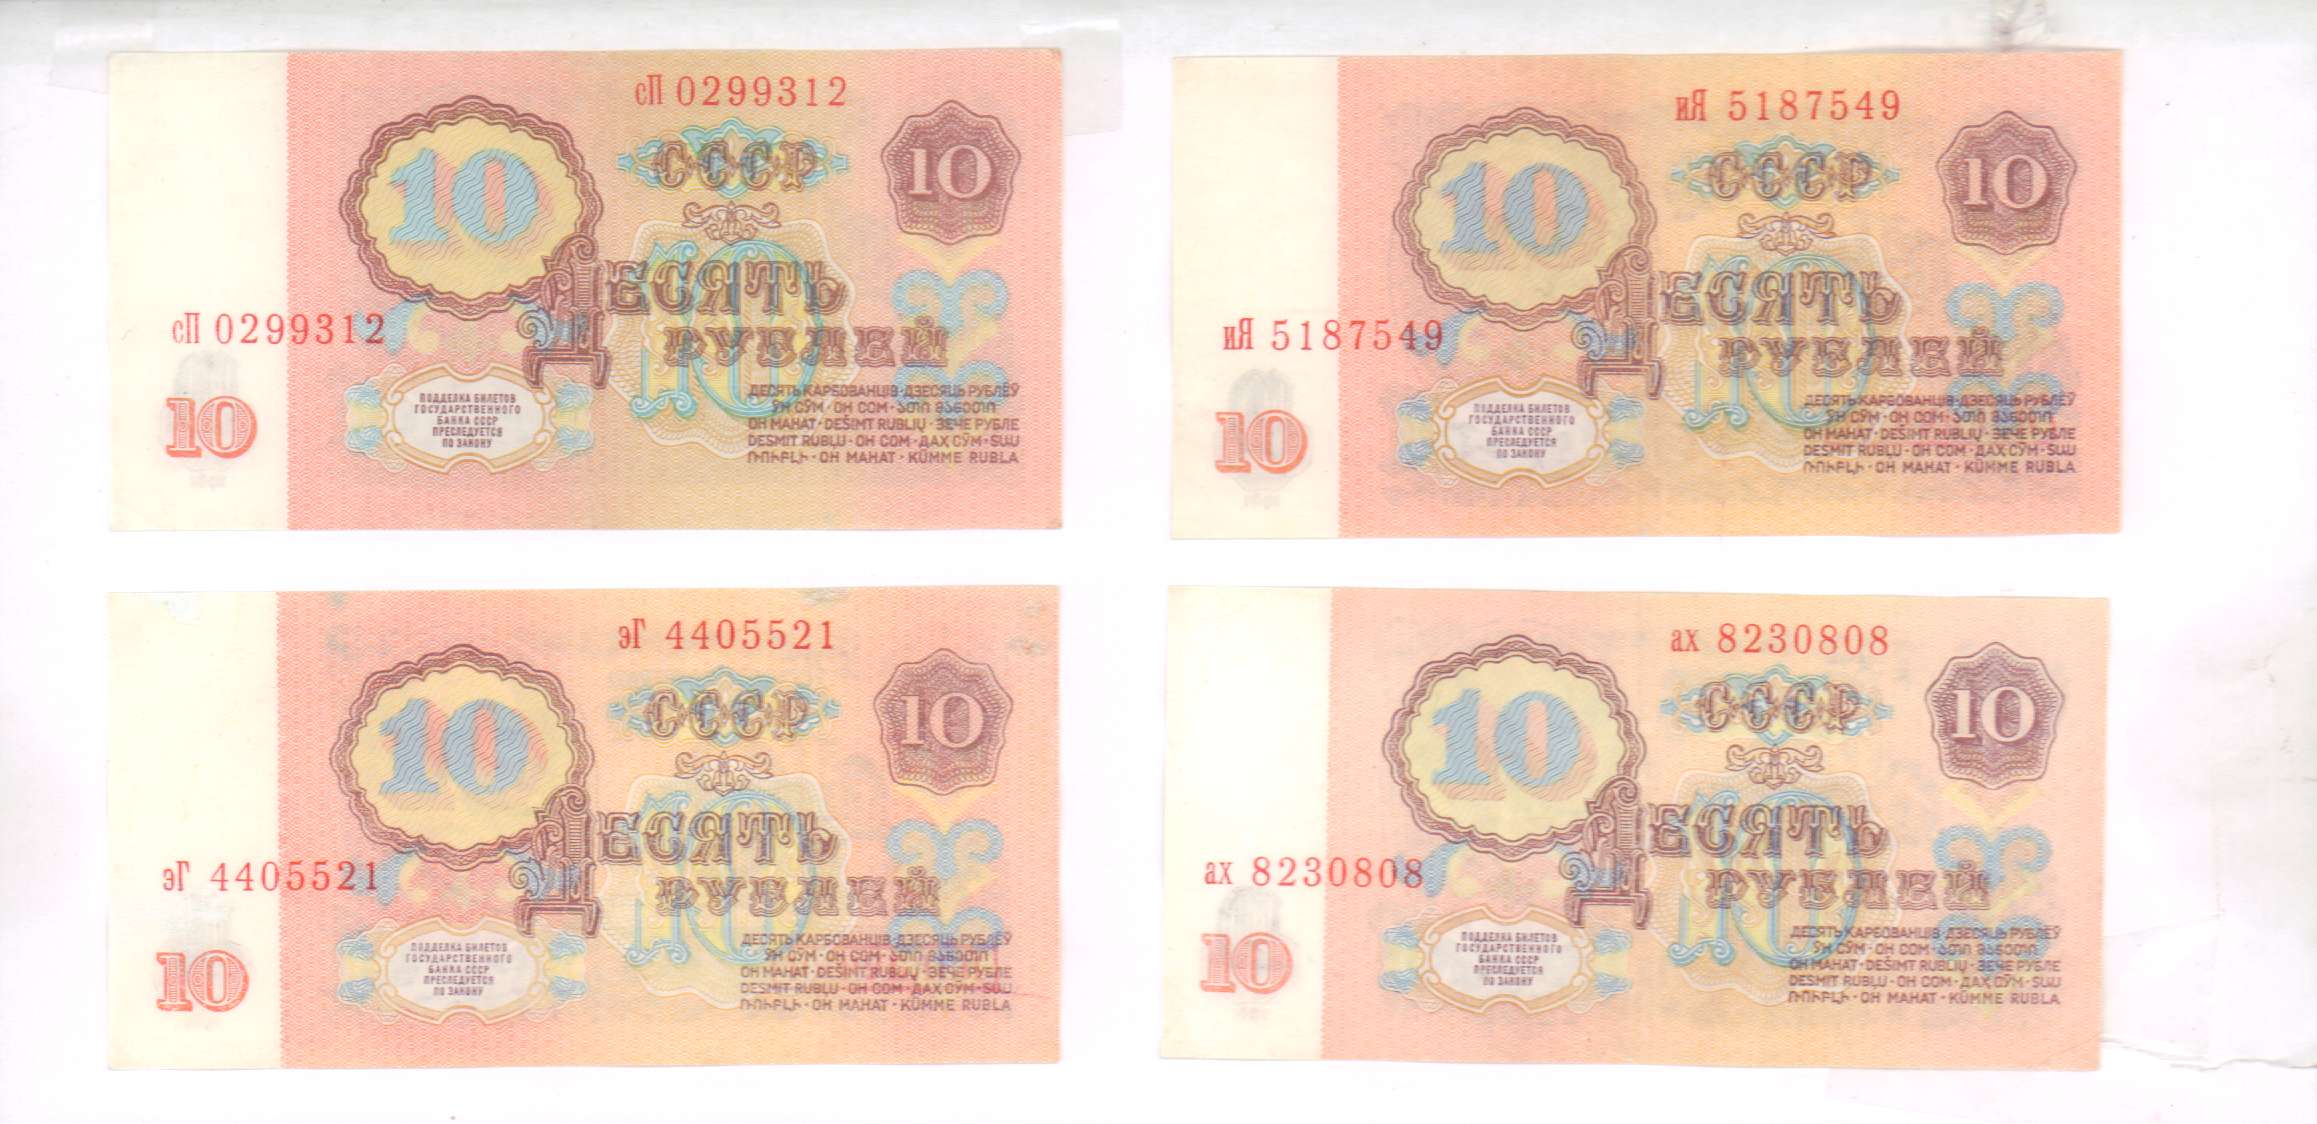 10 рублей билет. 10 Рублей билет государственного банка.